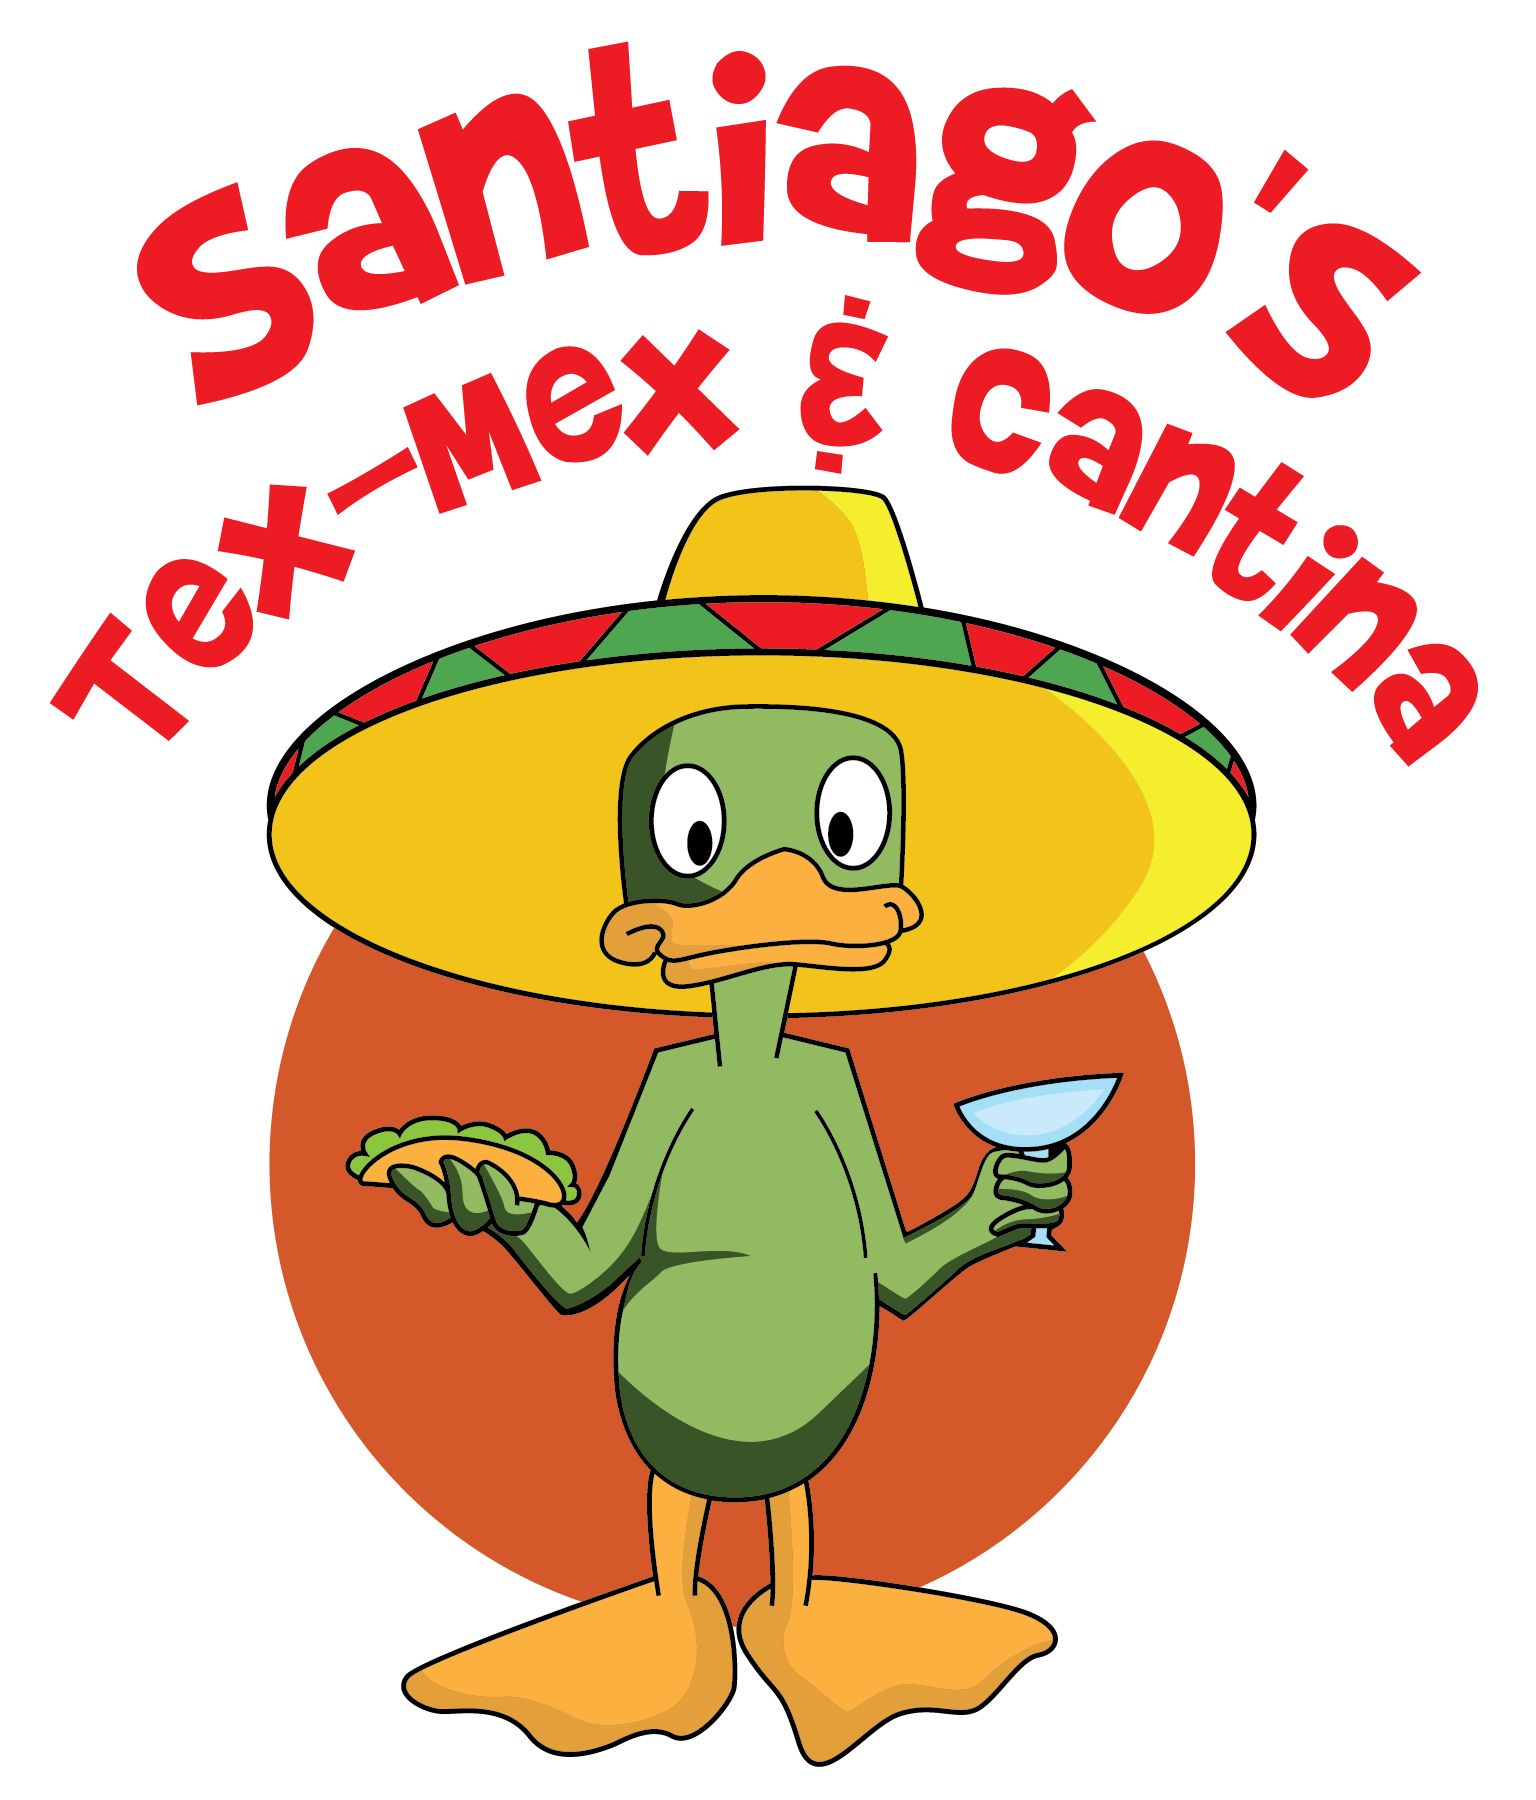 Santiago's Tex-Mex & Cantina#1 - Cat Hollow at 620 16420 RR 620 North Suite